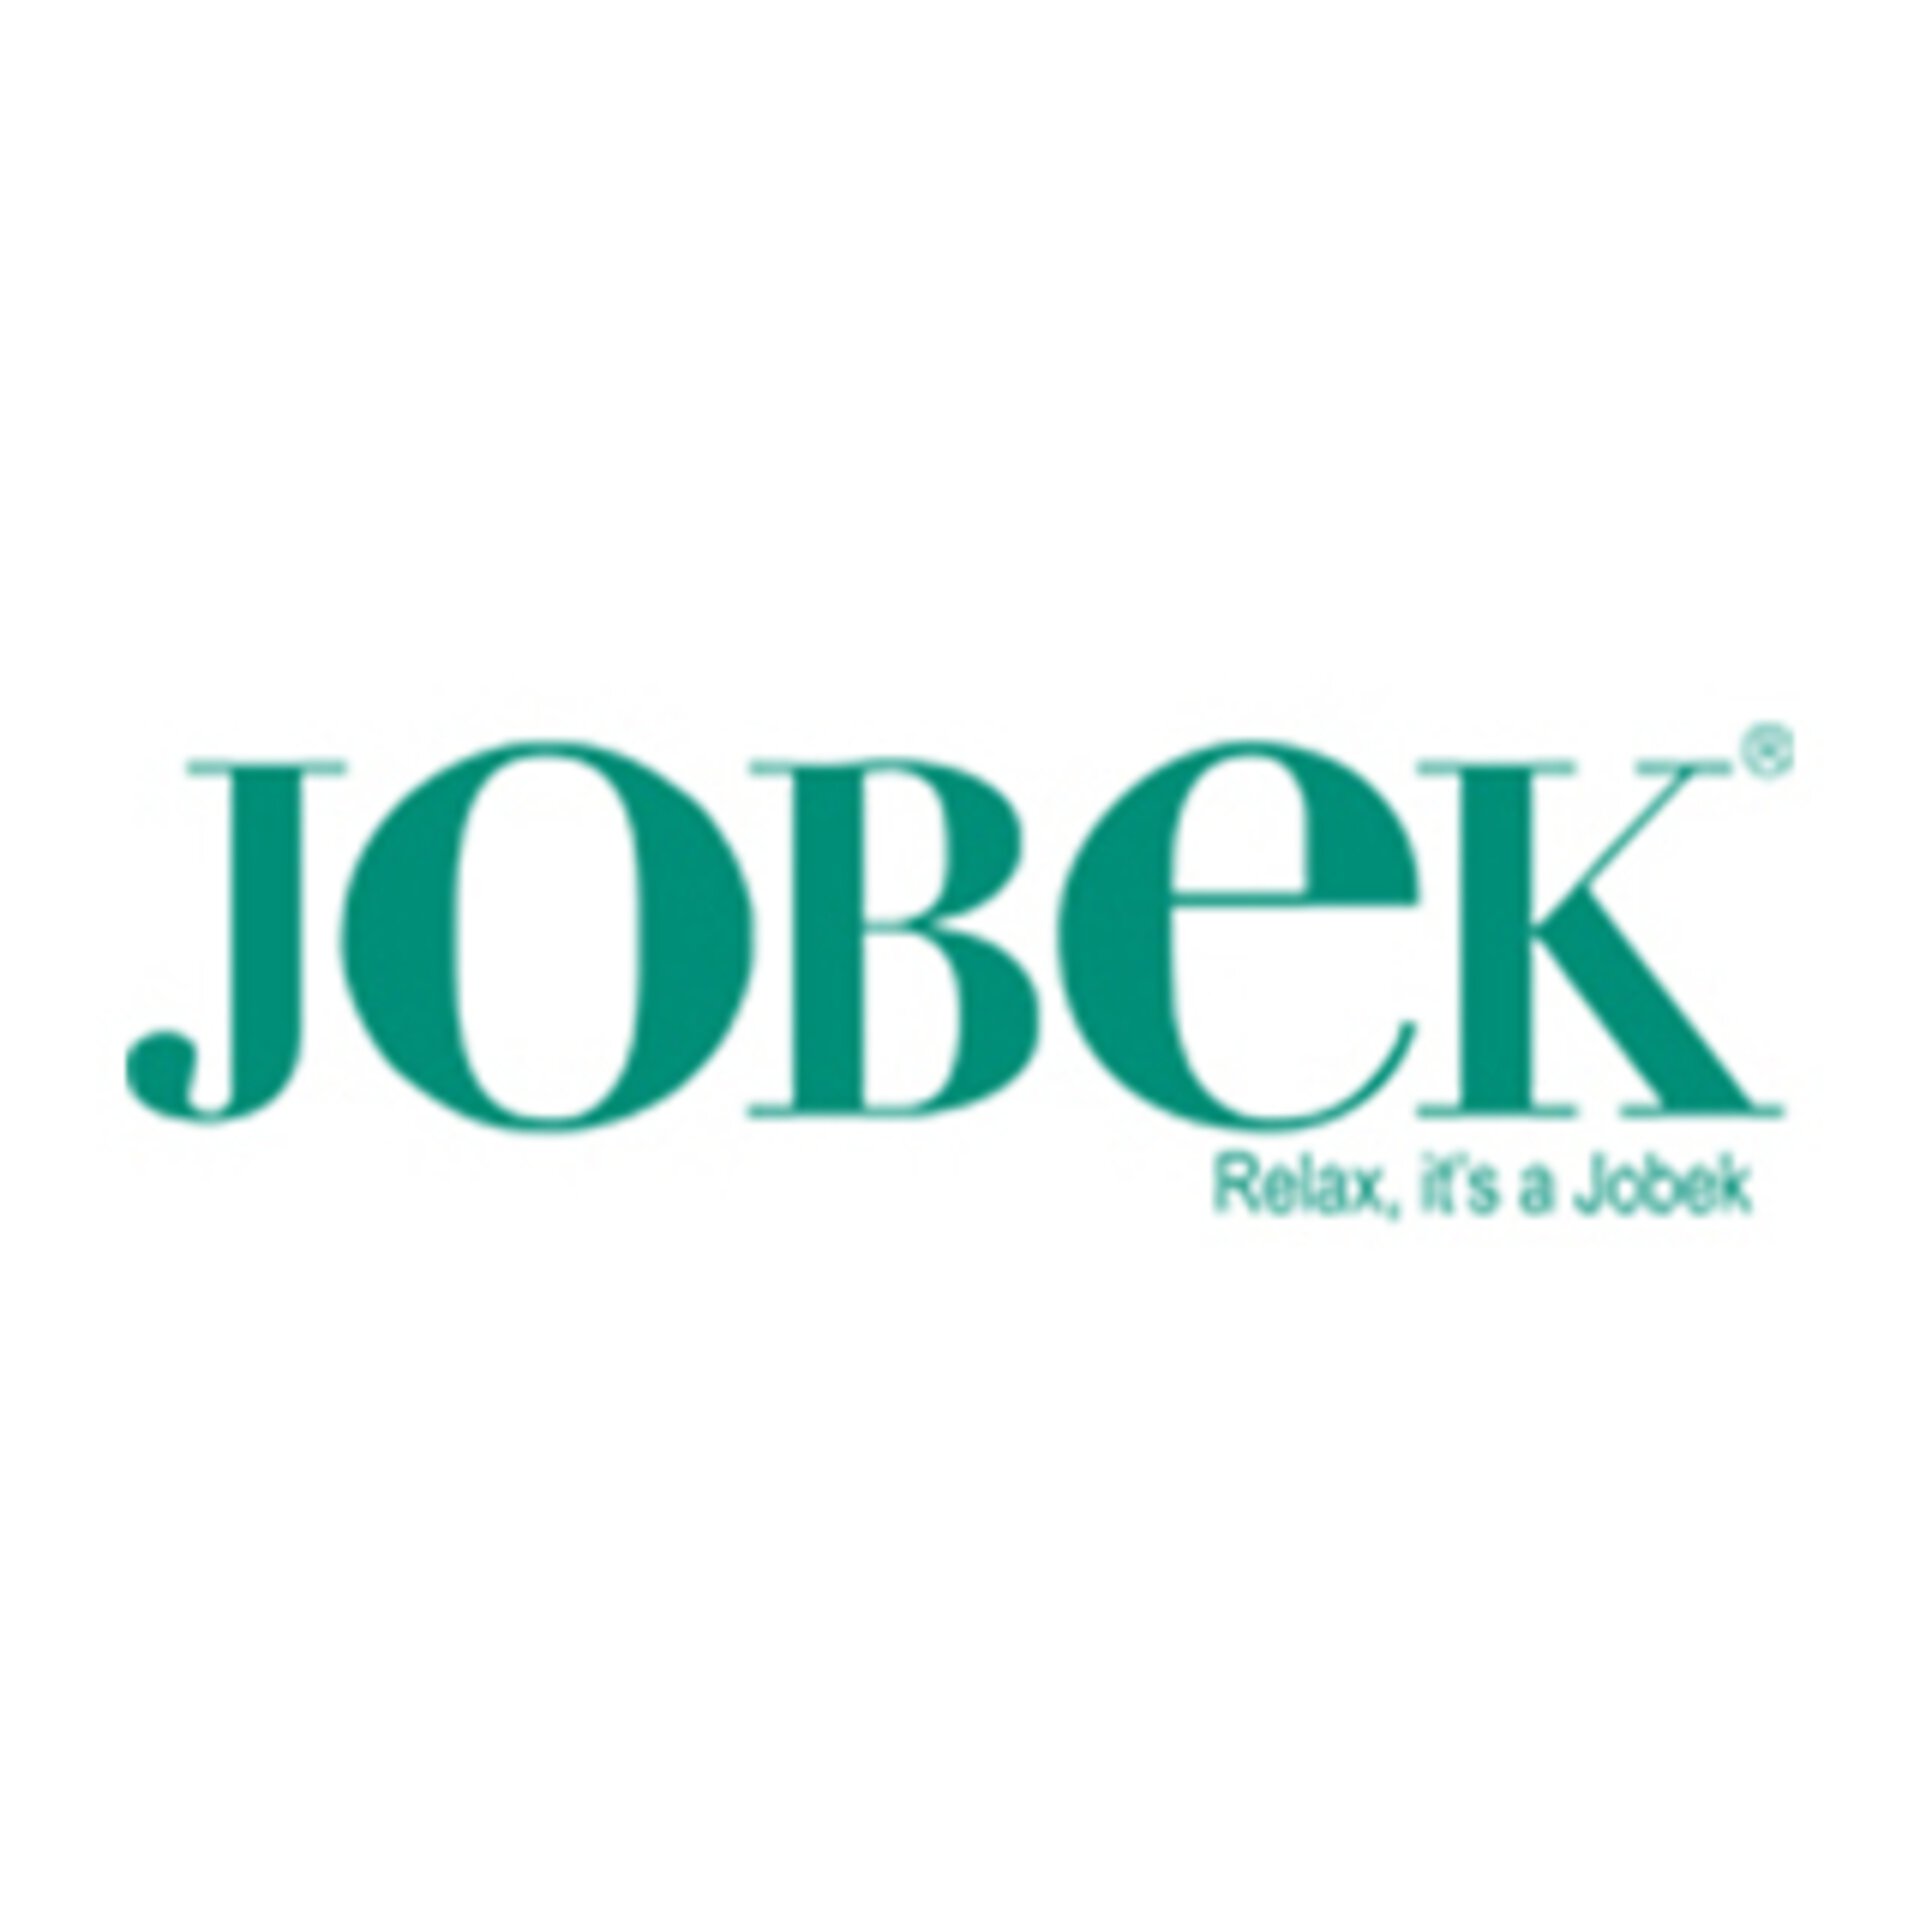 Marken-Logo JOBEK - Relax, it`s a Jobek